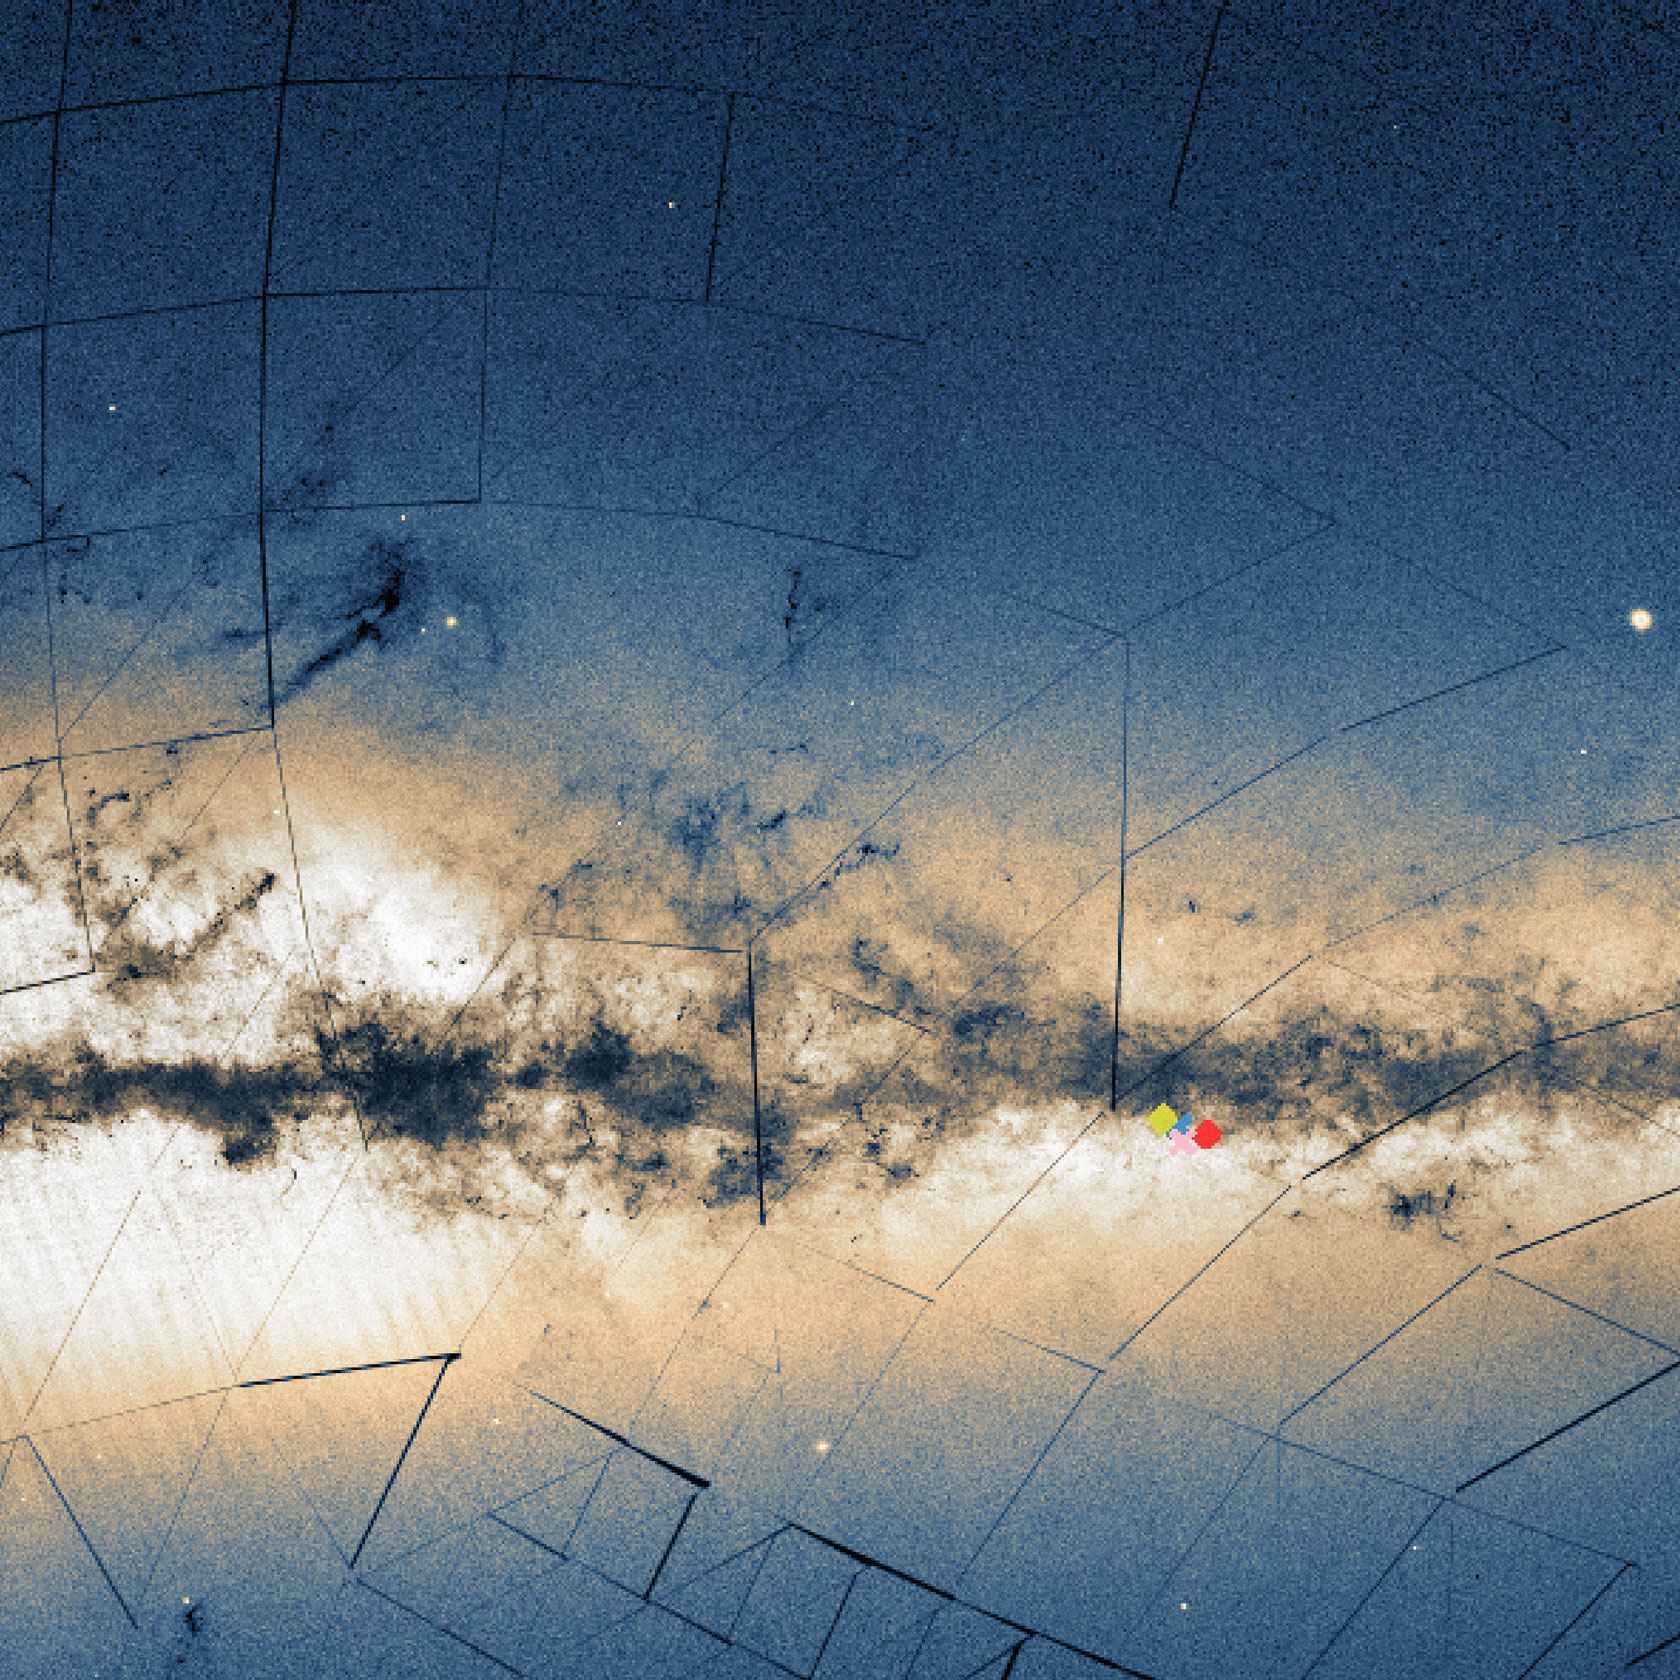 Detalhe da Via LÃ¡ctea com as posiÃ§Ãµes dos aglomerados UFMG 1 (vermelho), UFMG 2 (azul) e UFMG 3 (verde), descobertos pela equipe do ICEx quando estudava
o NGC 5999 (rosa). As regiÃµes escuras representam nuvens interestelares de gÃ¡s e poeira. A luz das estrelas que compÃµem a galÃ¡xia gera o brilho esbranquiÃ§ado que permeia a Ã¡rea central da imagem